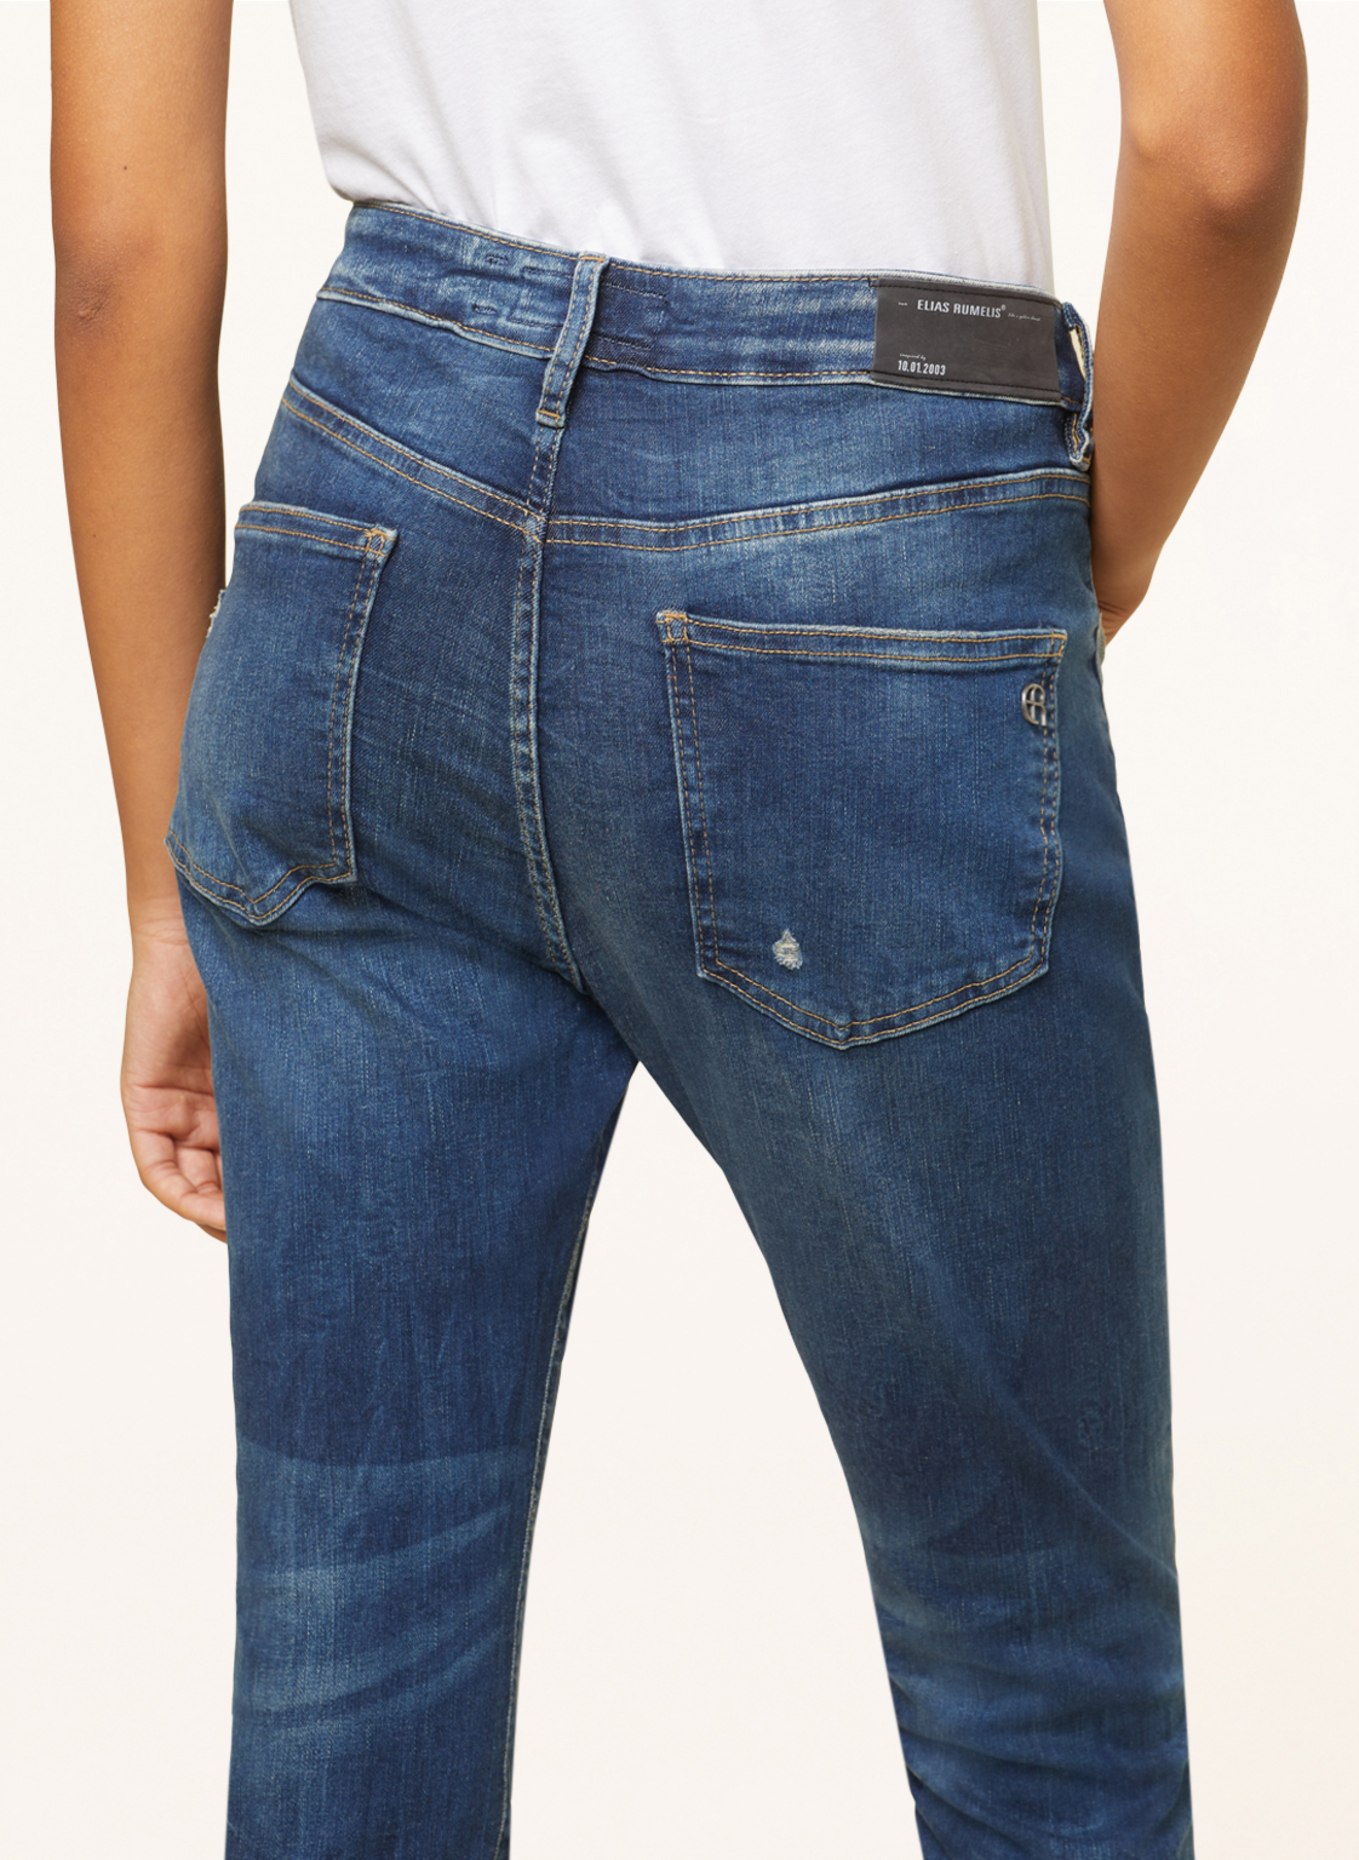 ELIAS RUMELIS Boyfriend jeans LANI, Color: 0582 queen blue (Image 5)